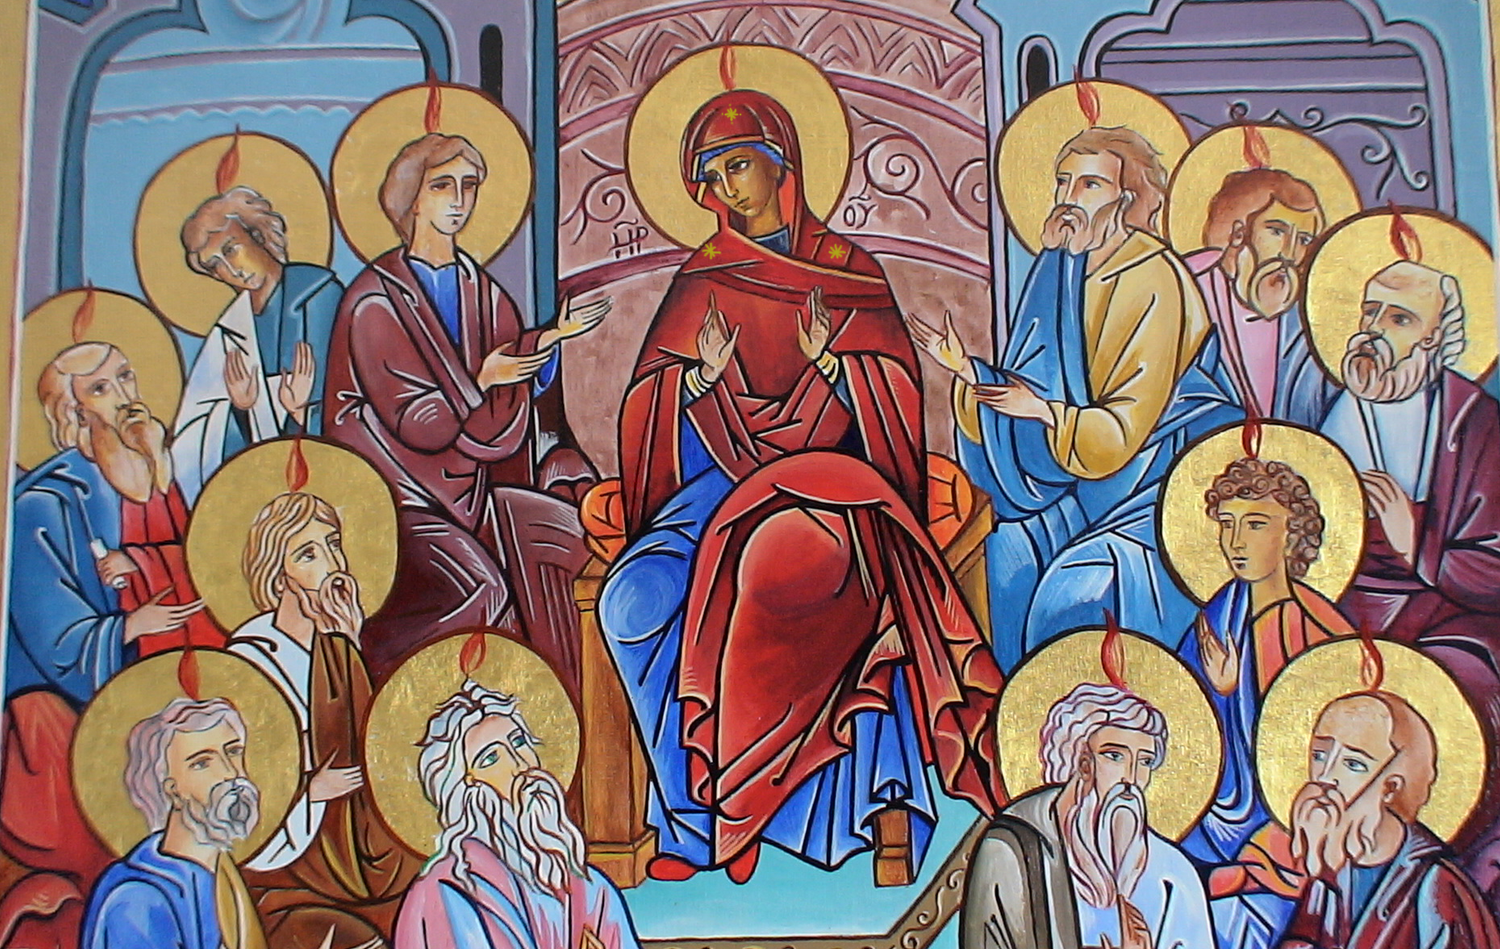 El misterio de las Lenguas de Fuego que Empoderaron a los Apóstoles y María en Pentecostés